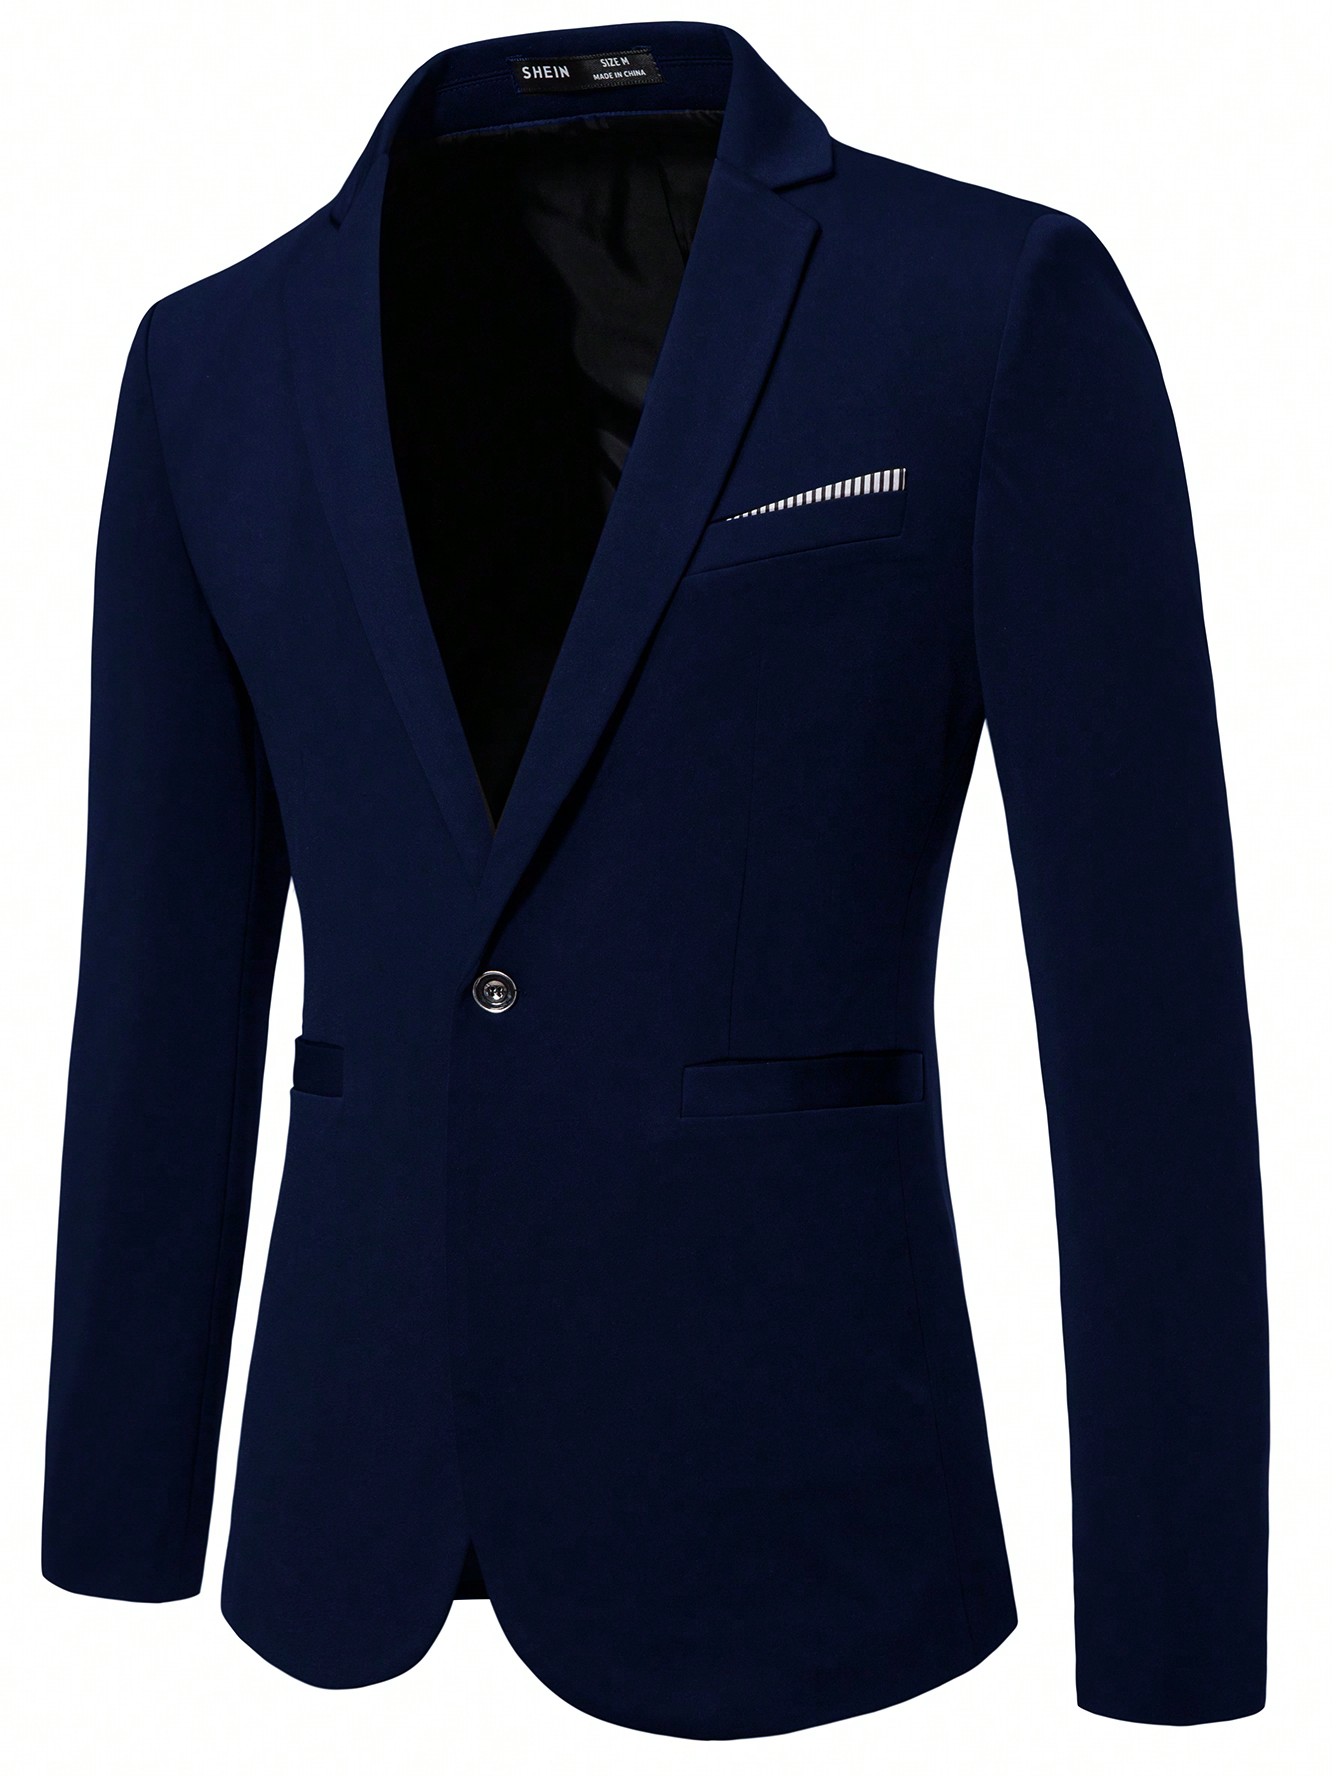 Мужской пиджак с длинными рукавами и зубчатыми лацканами Manfinity Mode, темно-синий